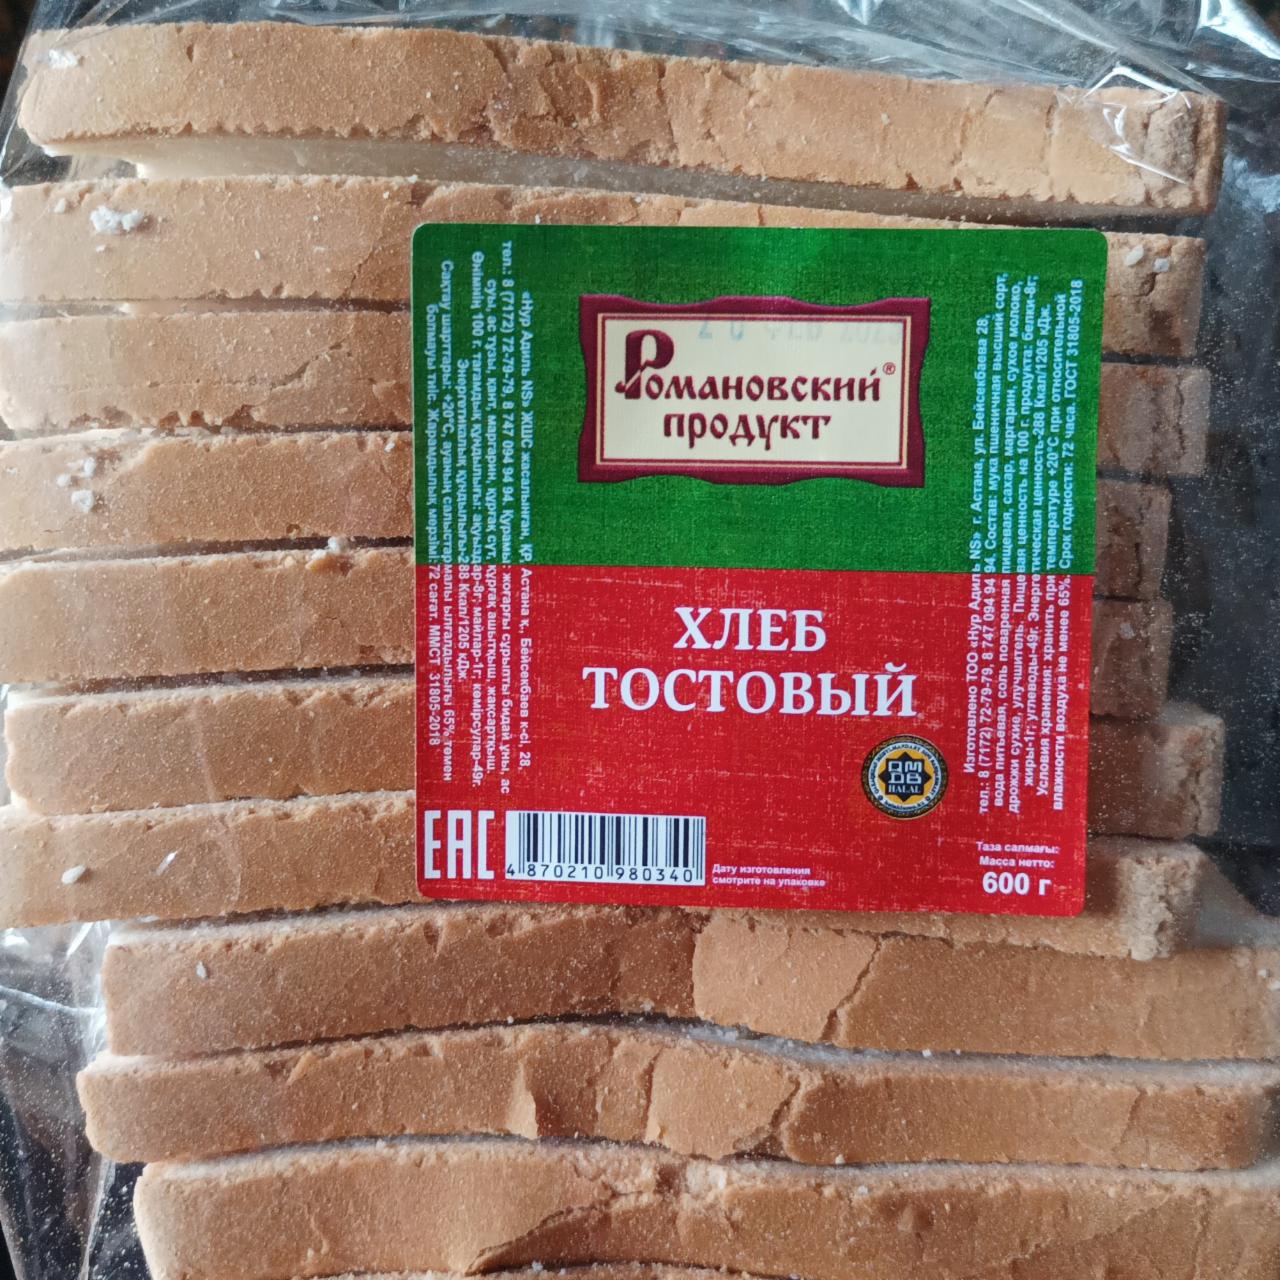 Фото - Хлеб тостовый Романовский продукт